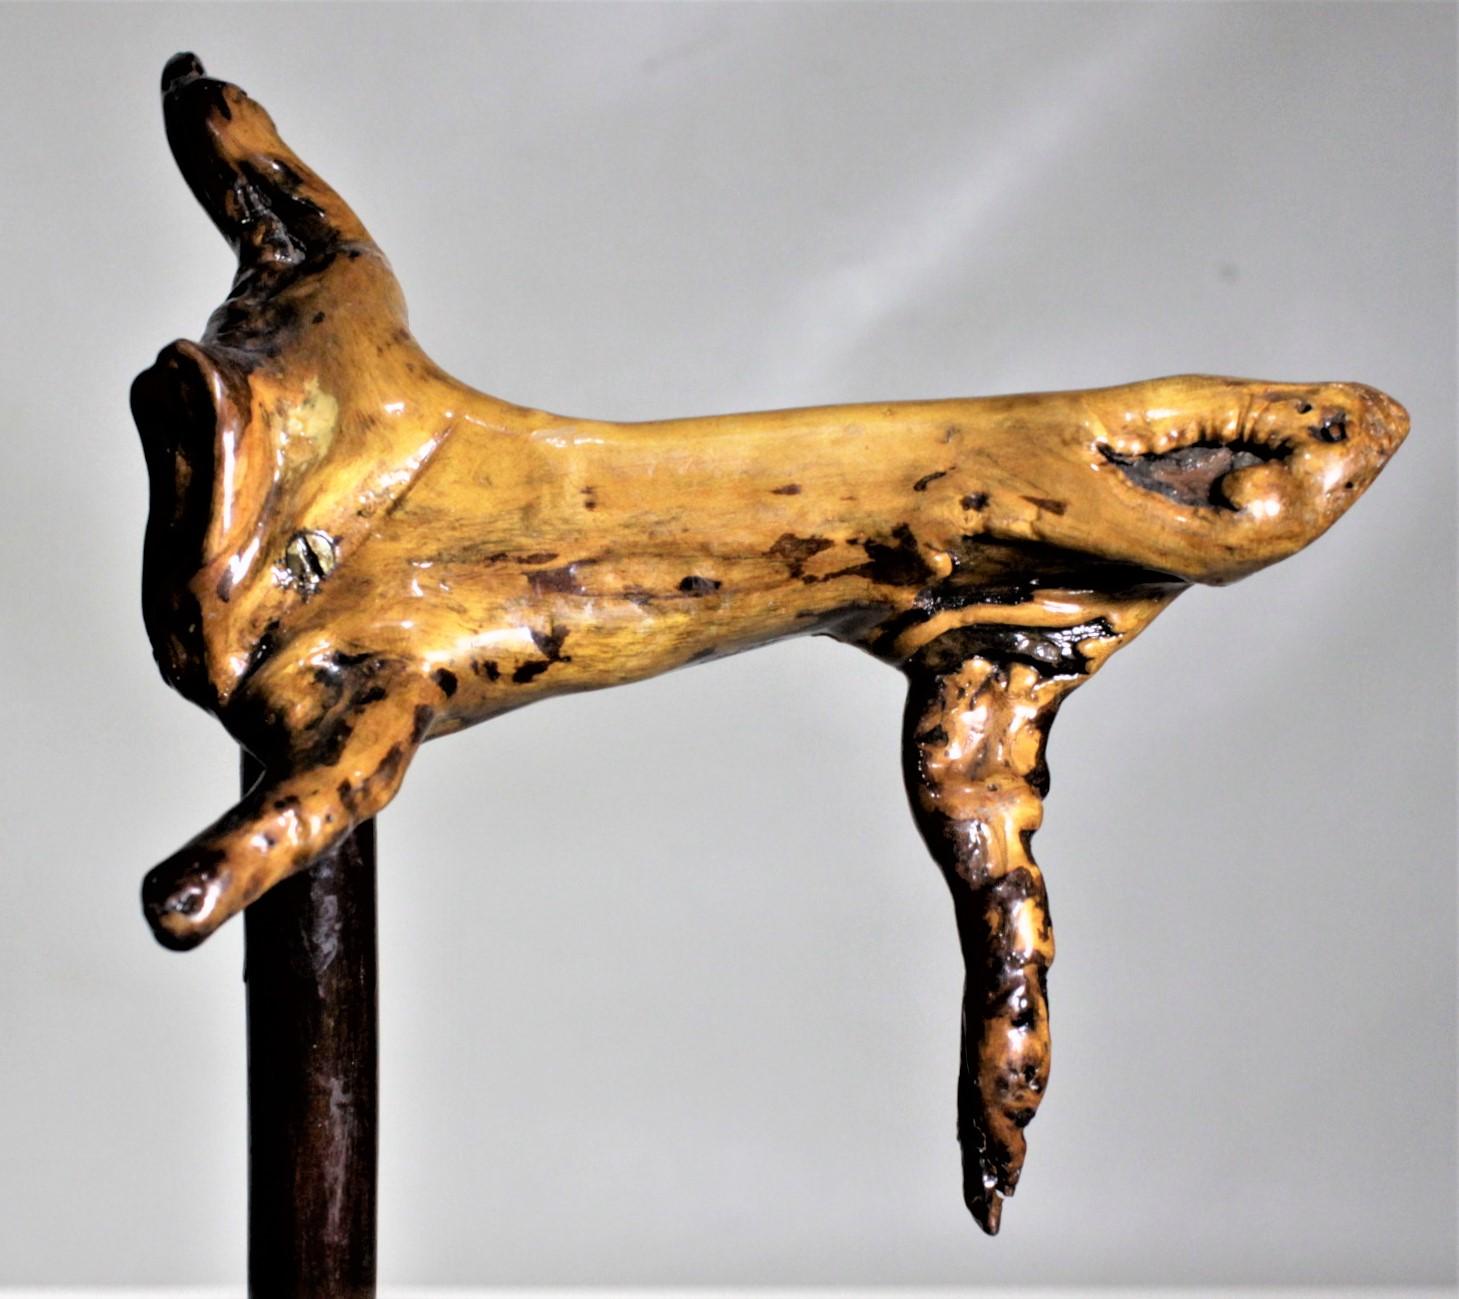 Cette canne ou bâton de marche Folk Art n'est pas du tout marquée, mais on suppose qu'elle a été fabriquée aux États-Unis vers 1920 dans le style Folk Art. Le manche de la canne est un morceau de bois flambé laqué avec des sections non